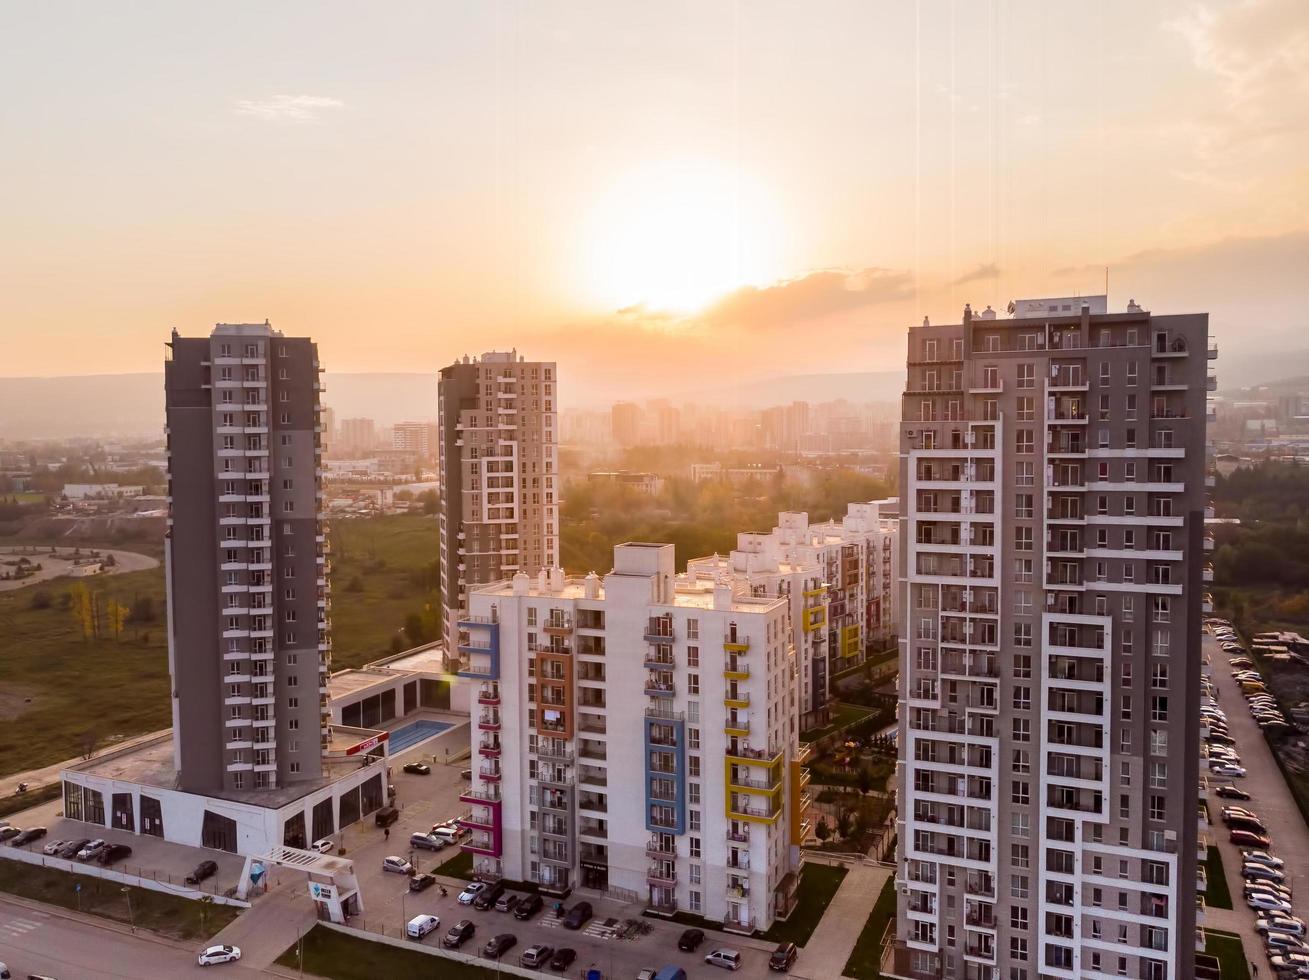 tbilisi, geórgia, 2021 - panorama de edifícios complexos de apartamentos de diamante verde com fundo ensolarado por do sol. conceito de indústria de negócios imobiliários da geórgia foto